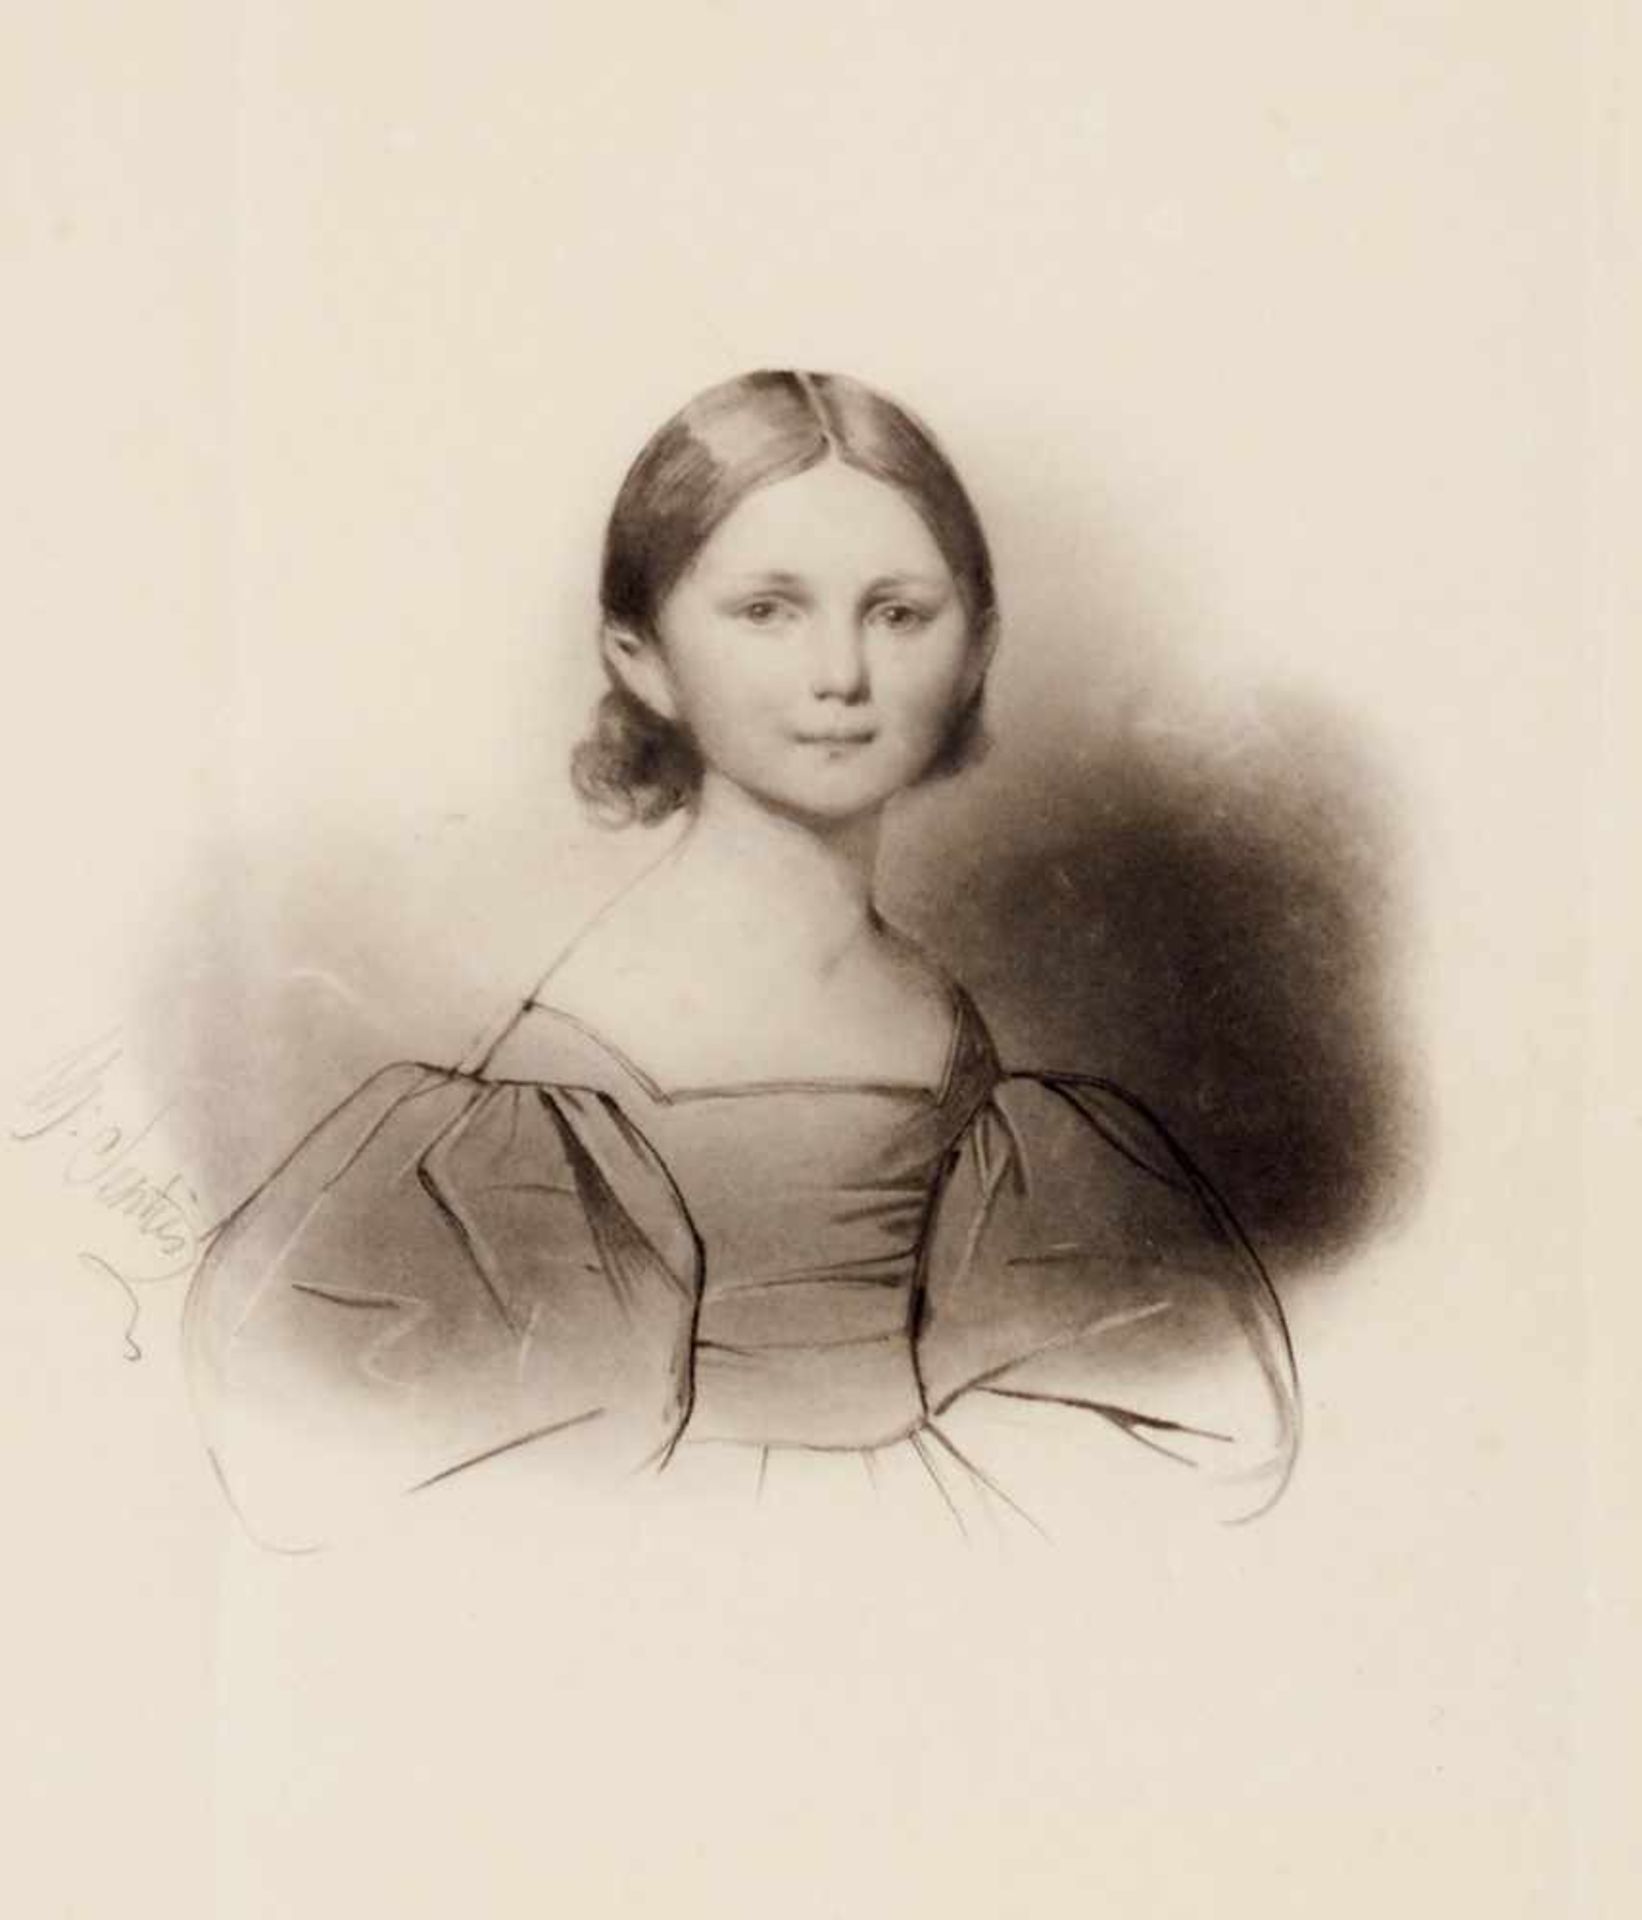 Porträts Adelgunde Auguste, Prinzessin von Bayern - Brustbild als Kind. Lavierte Kohlezeichnungvon